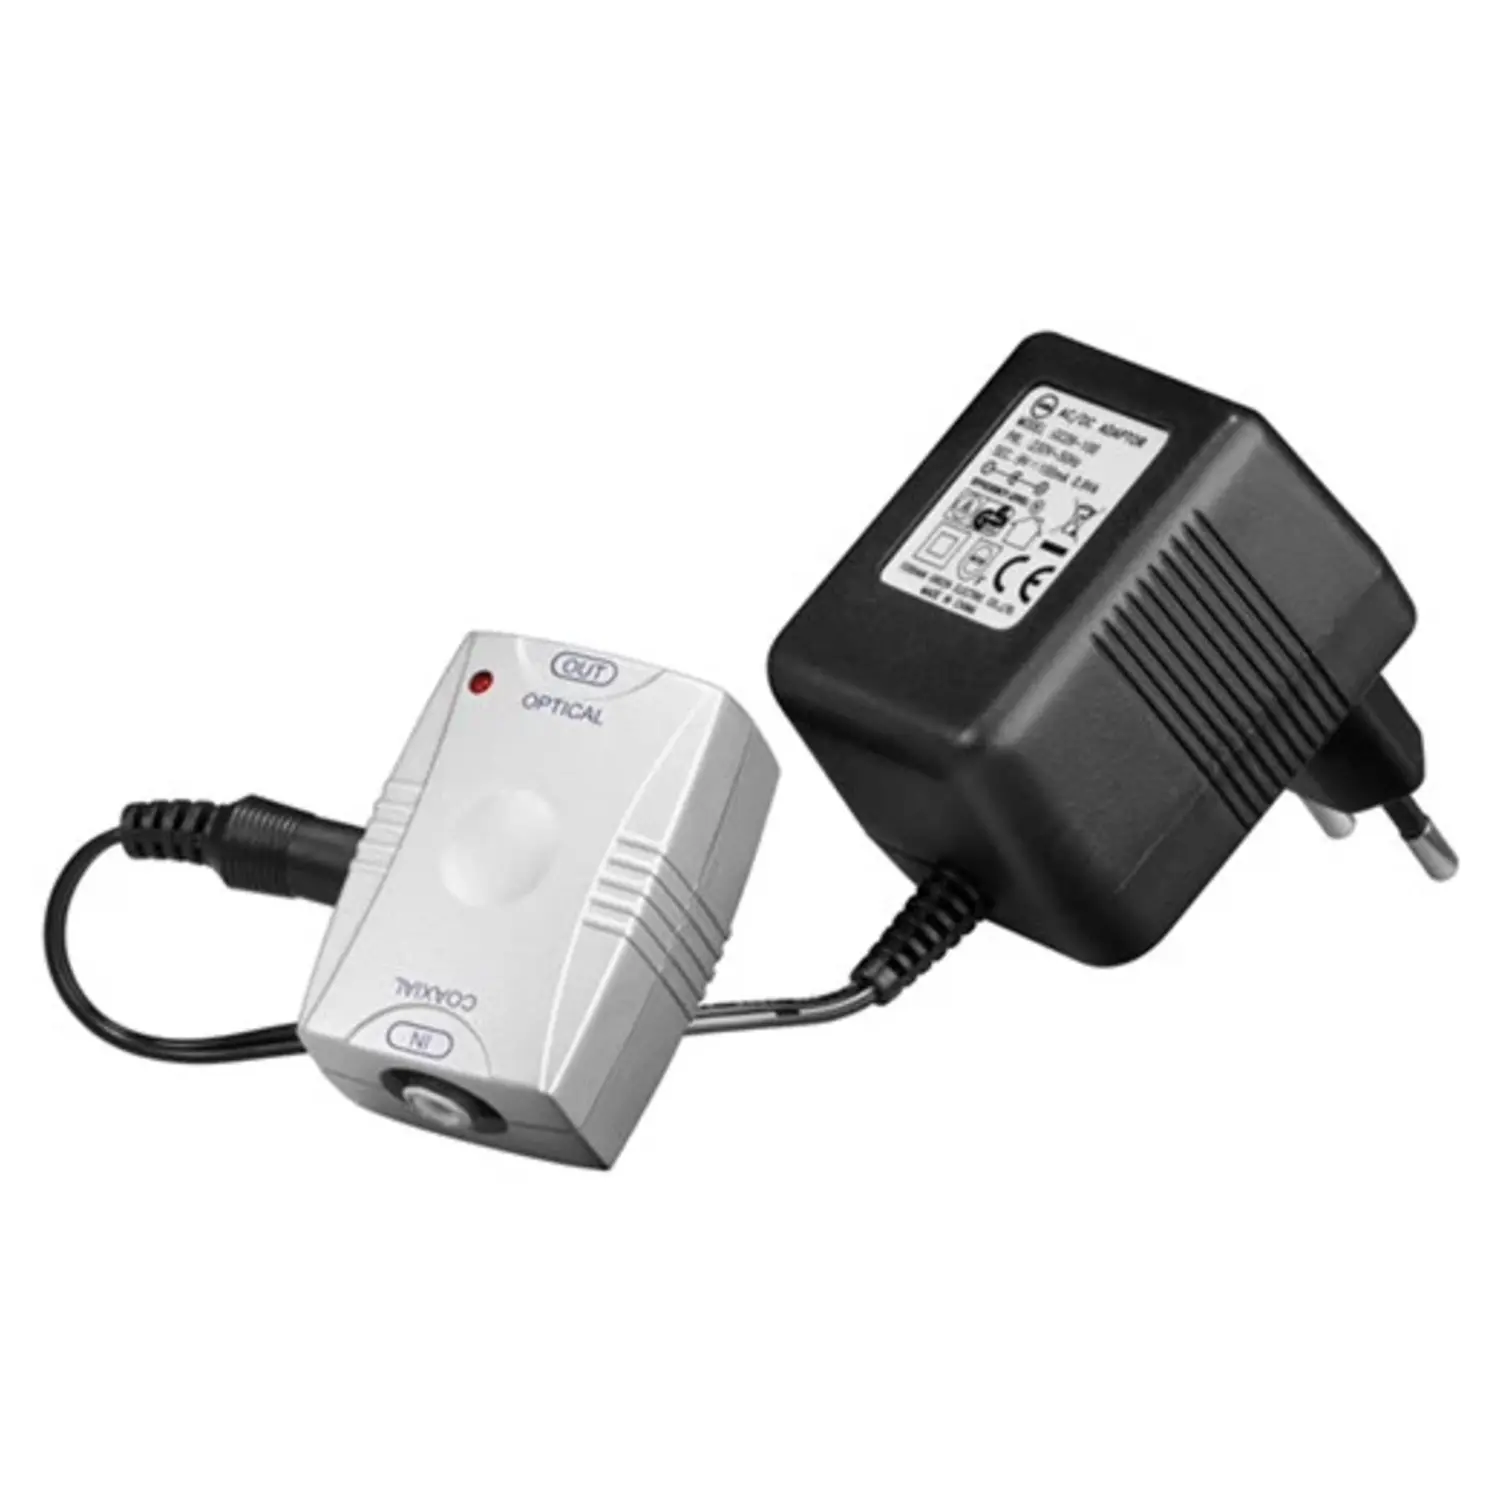 immagine convertitore segnale elettrico digitale a toslink ottico CE 220-240 volt wnt 11918